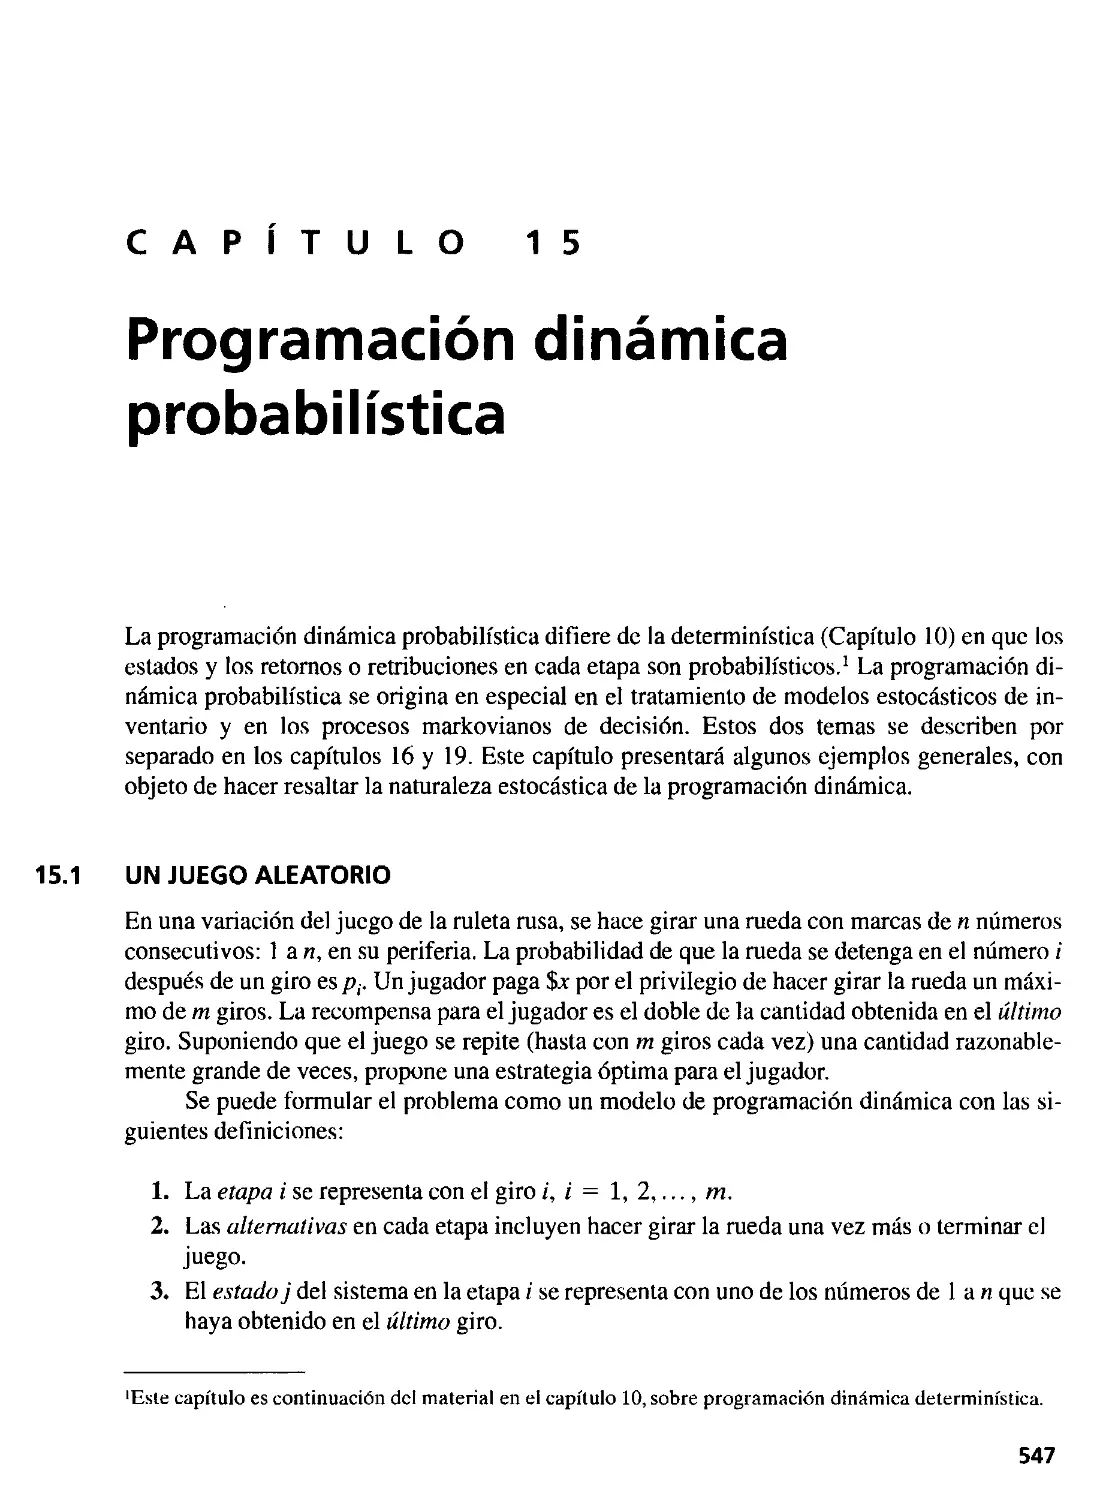 15. Programación dinámica probabilística